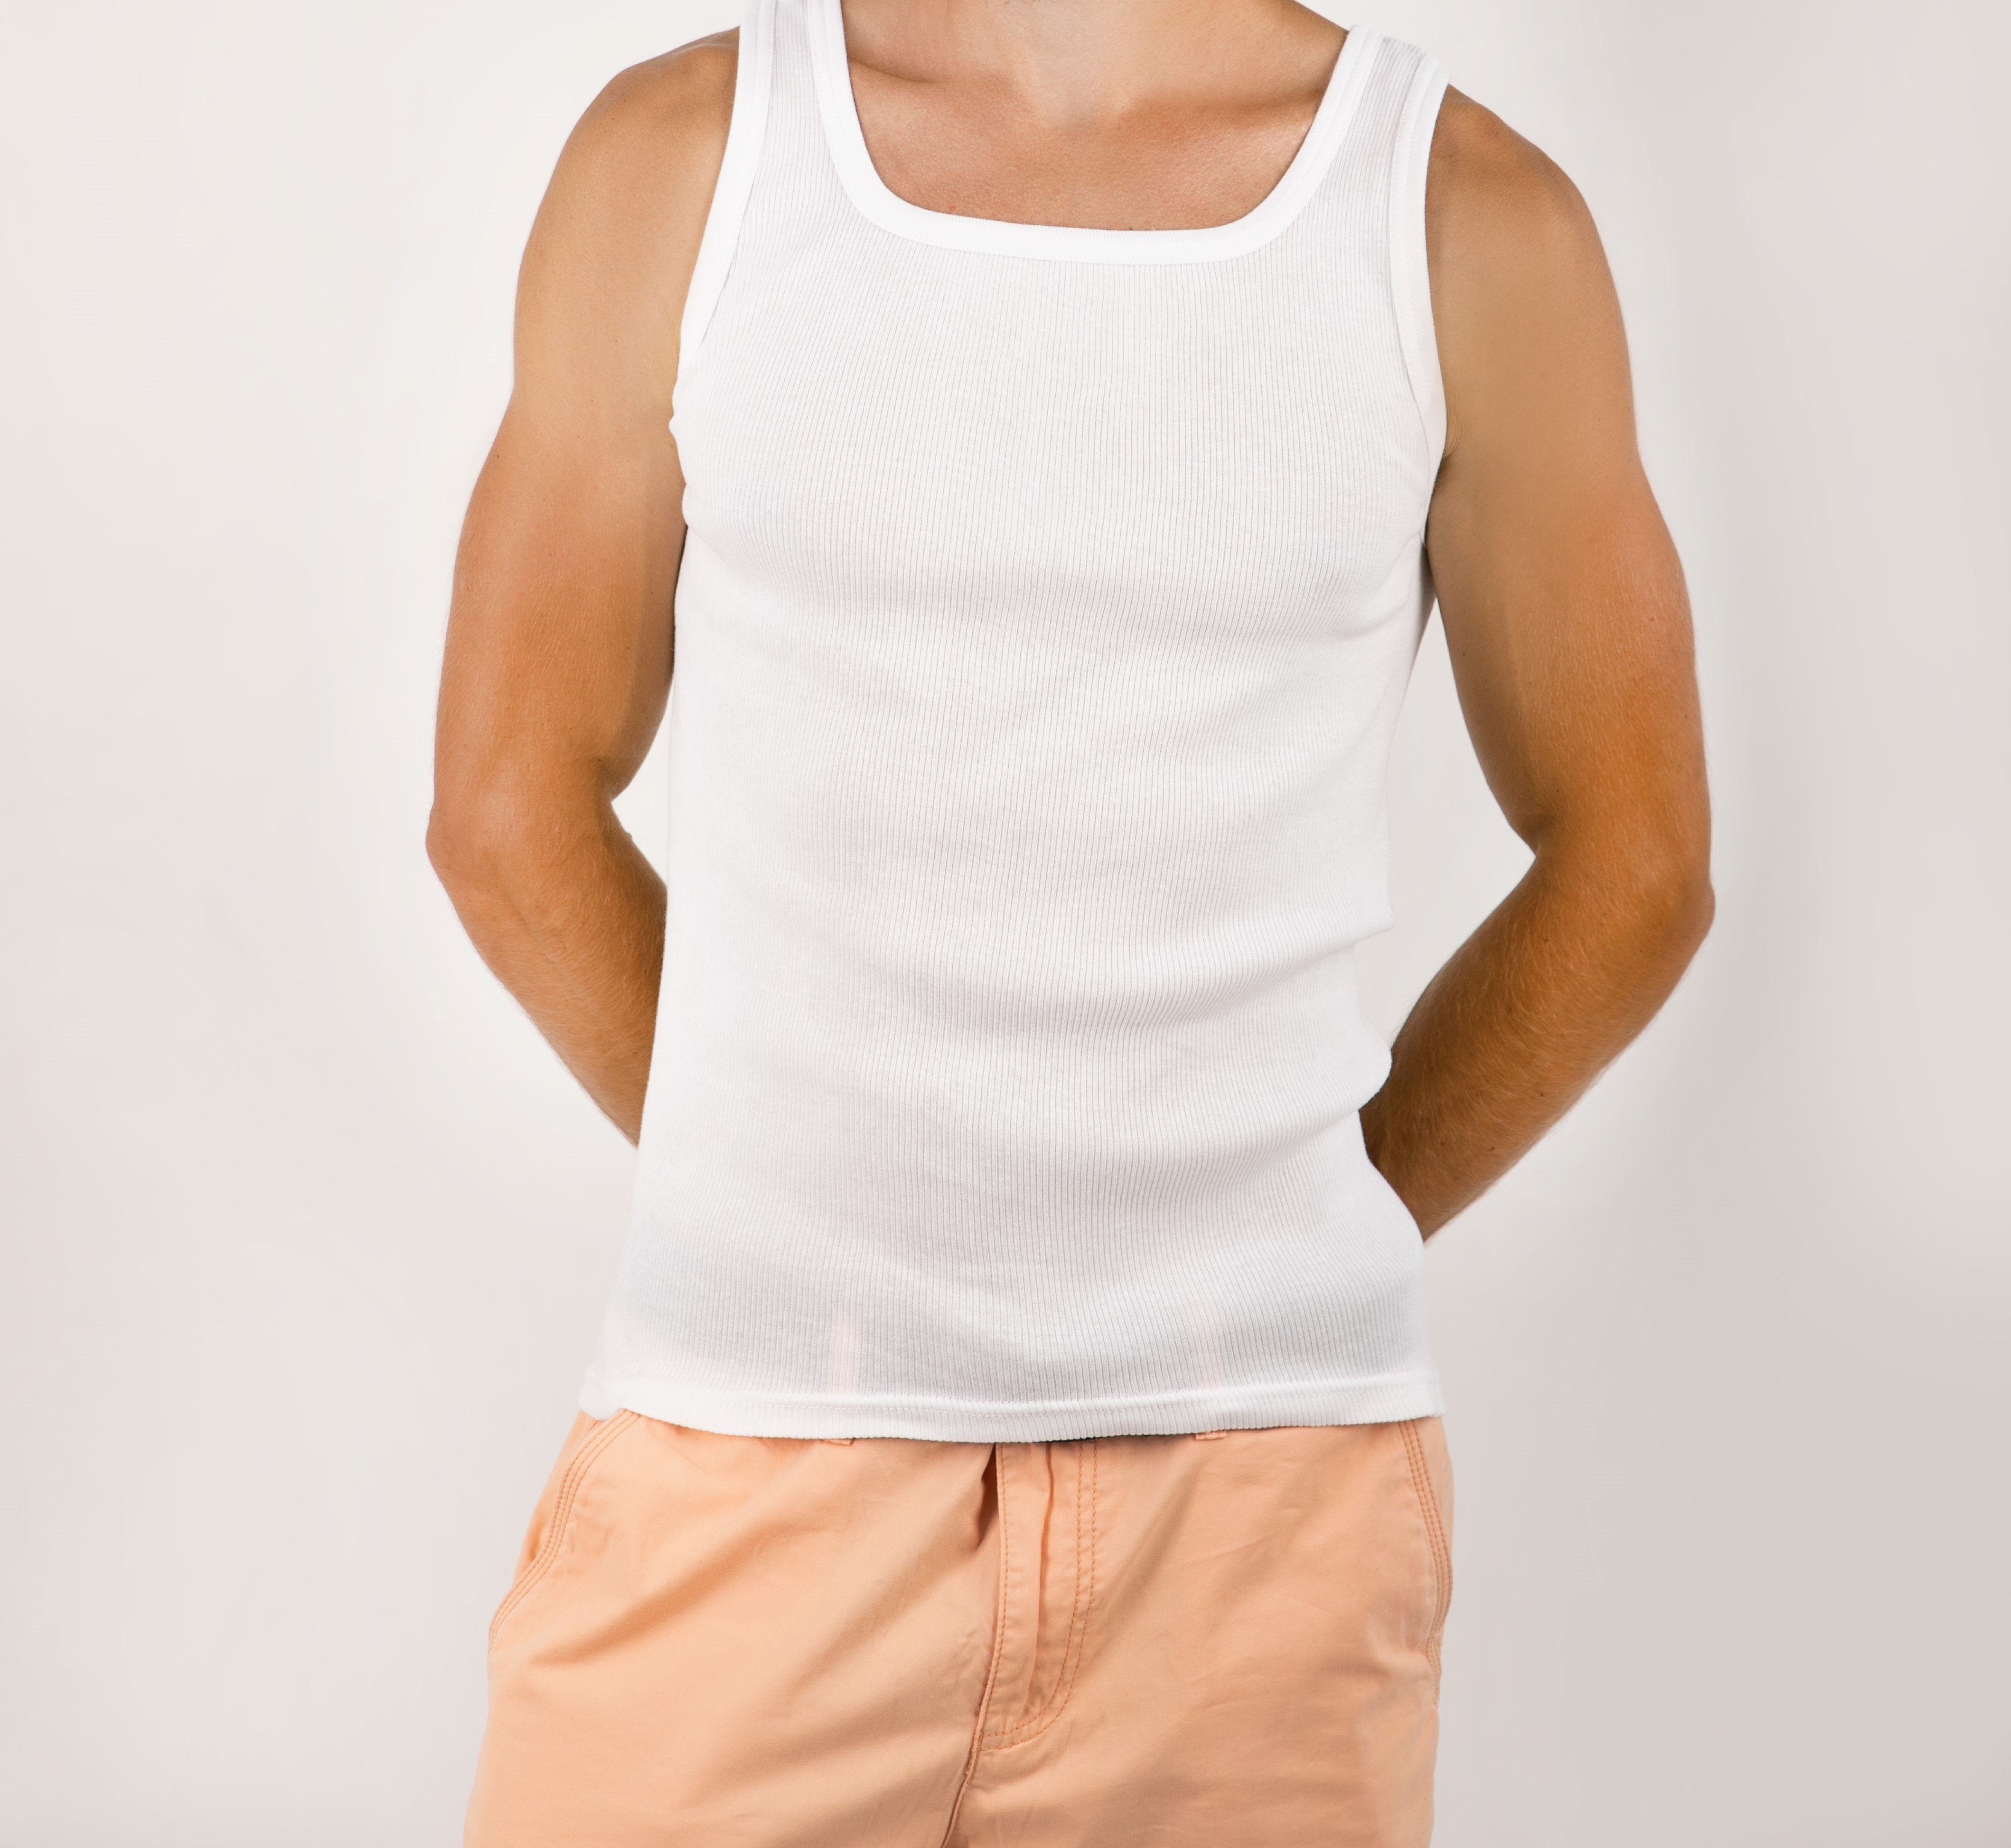 STTS Unterhemd 3-er Pack Weiß Baumwolle Feinripp Herrenunterhemden 100% Top-Qualität